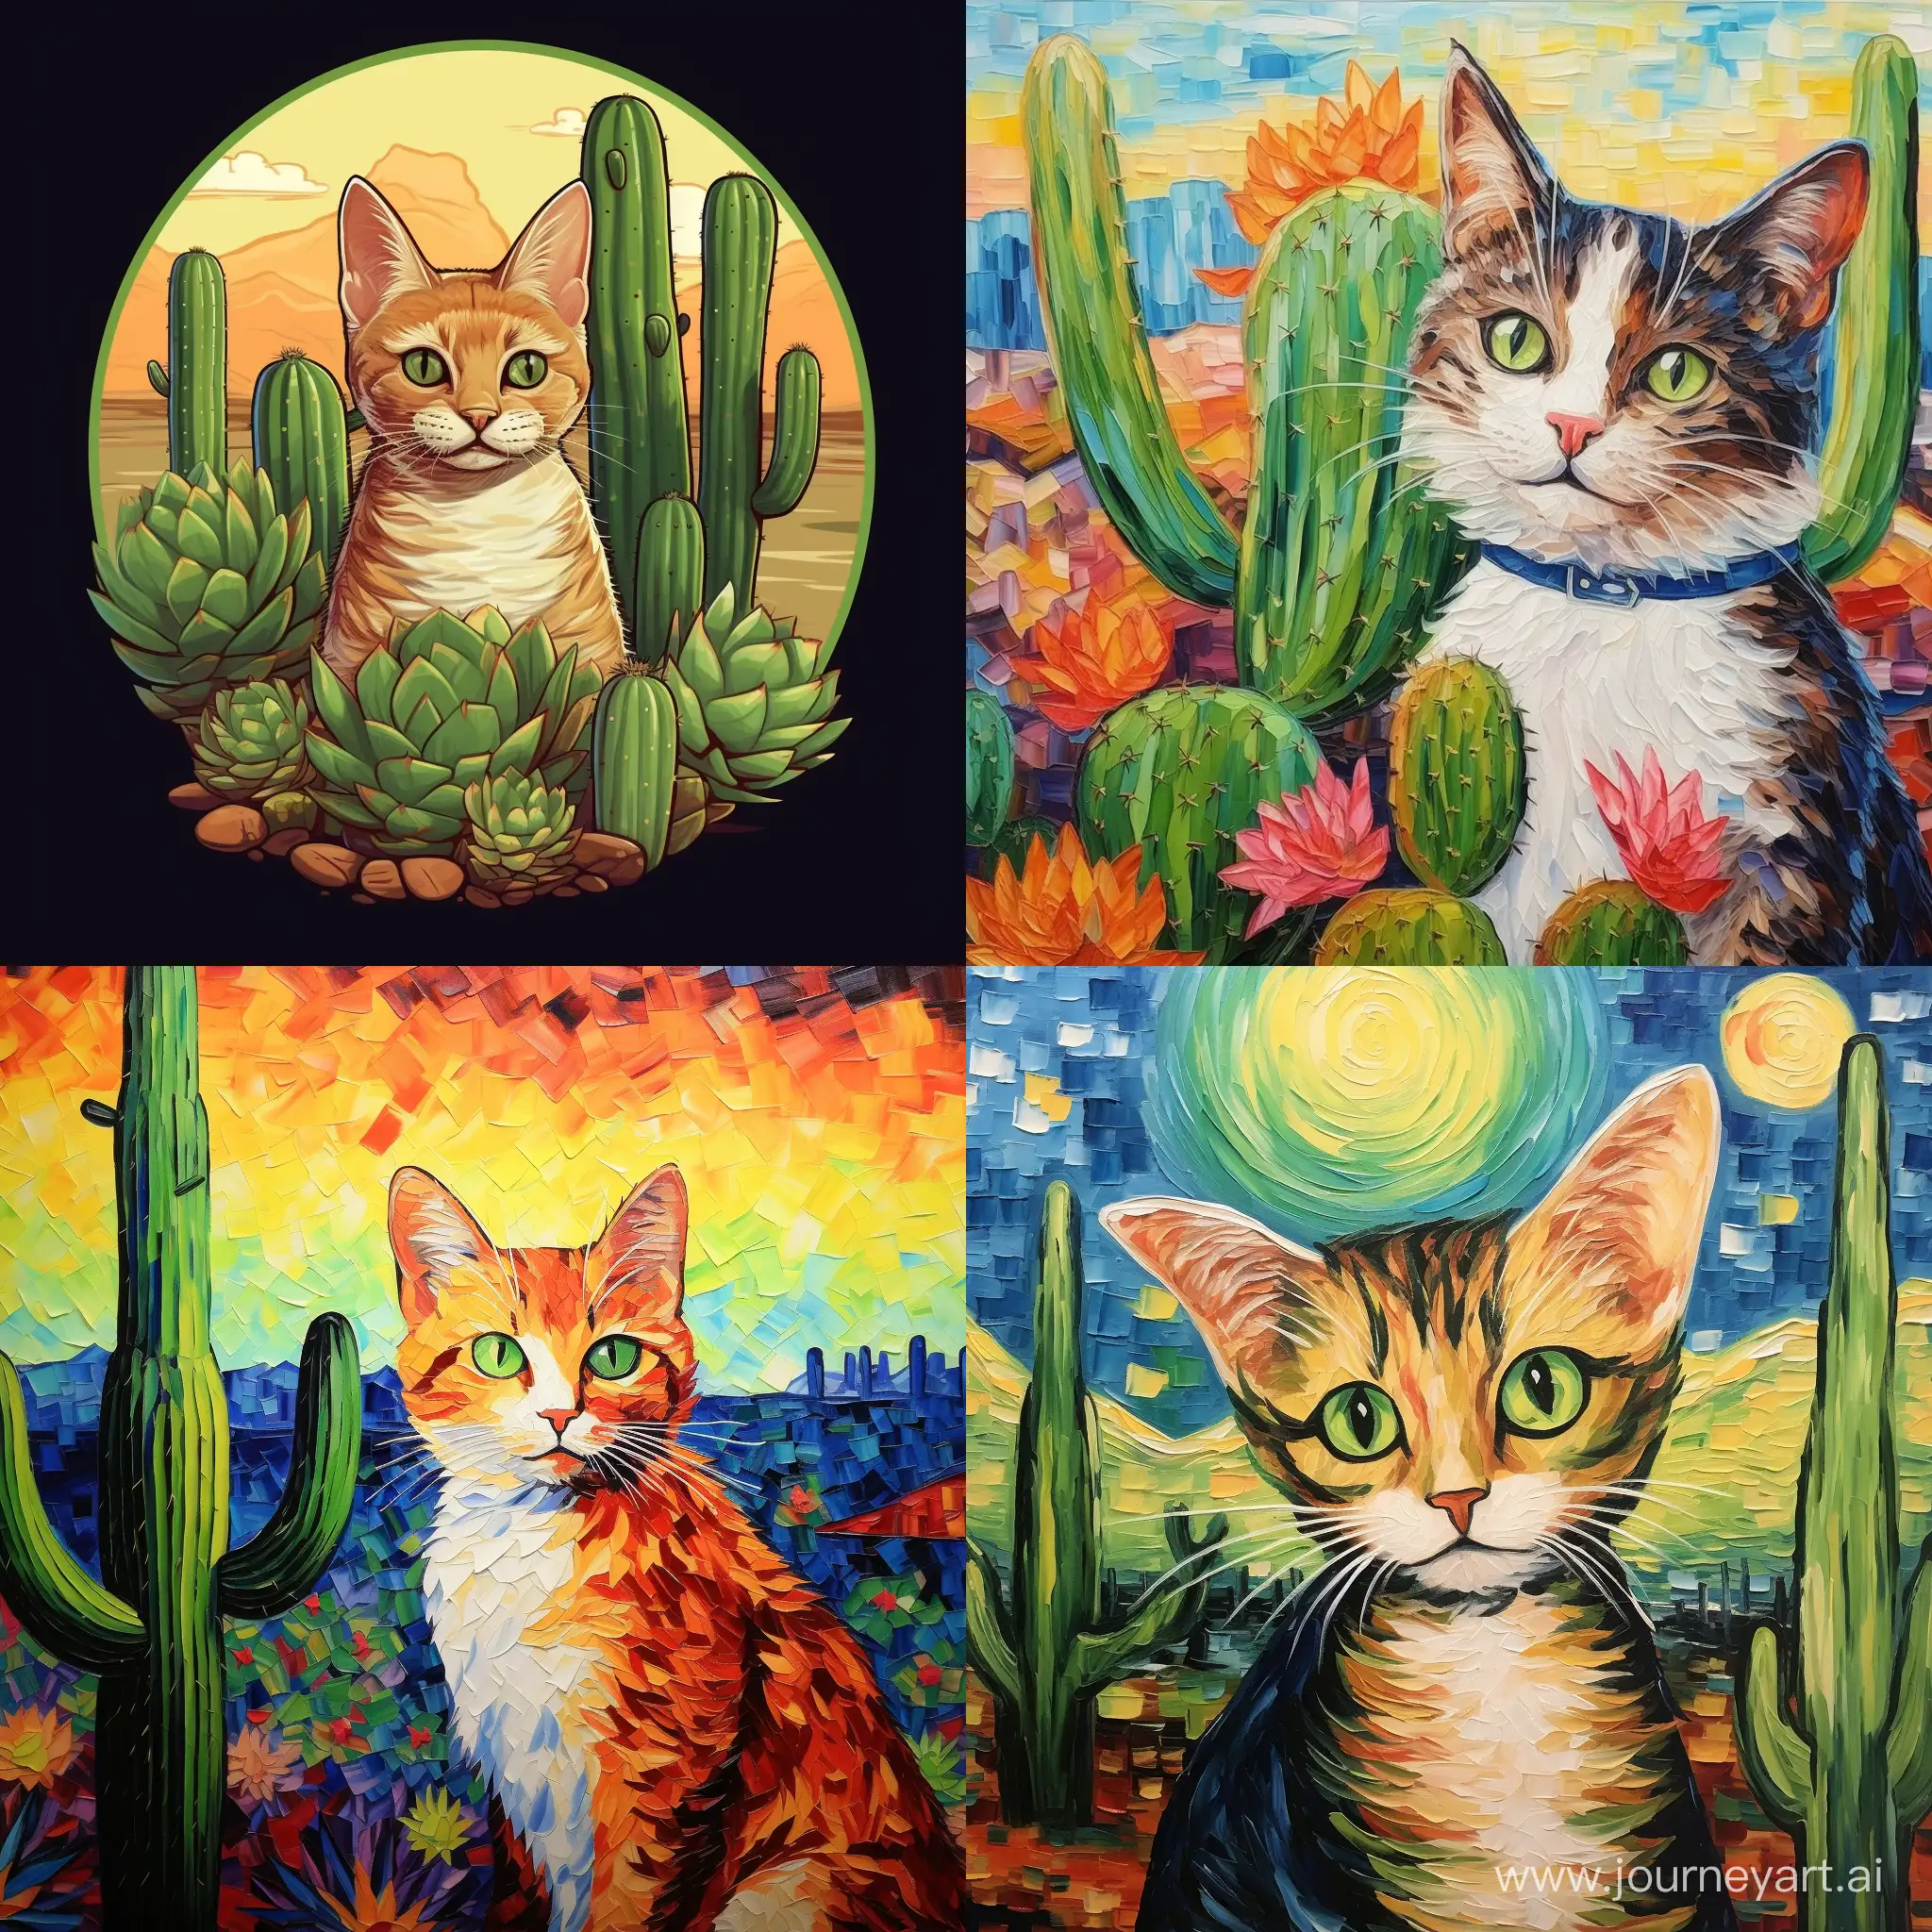 Joyful-Cat-Eating-Cactus-in-Van-Gogh-Anime-Style